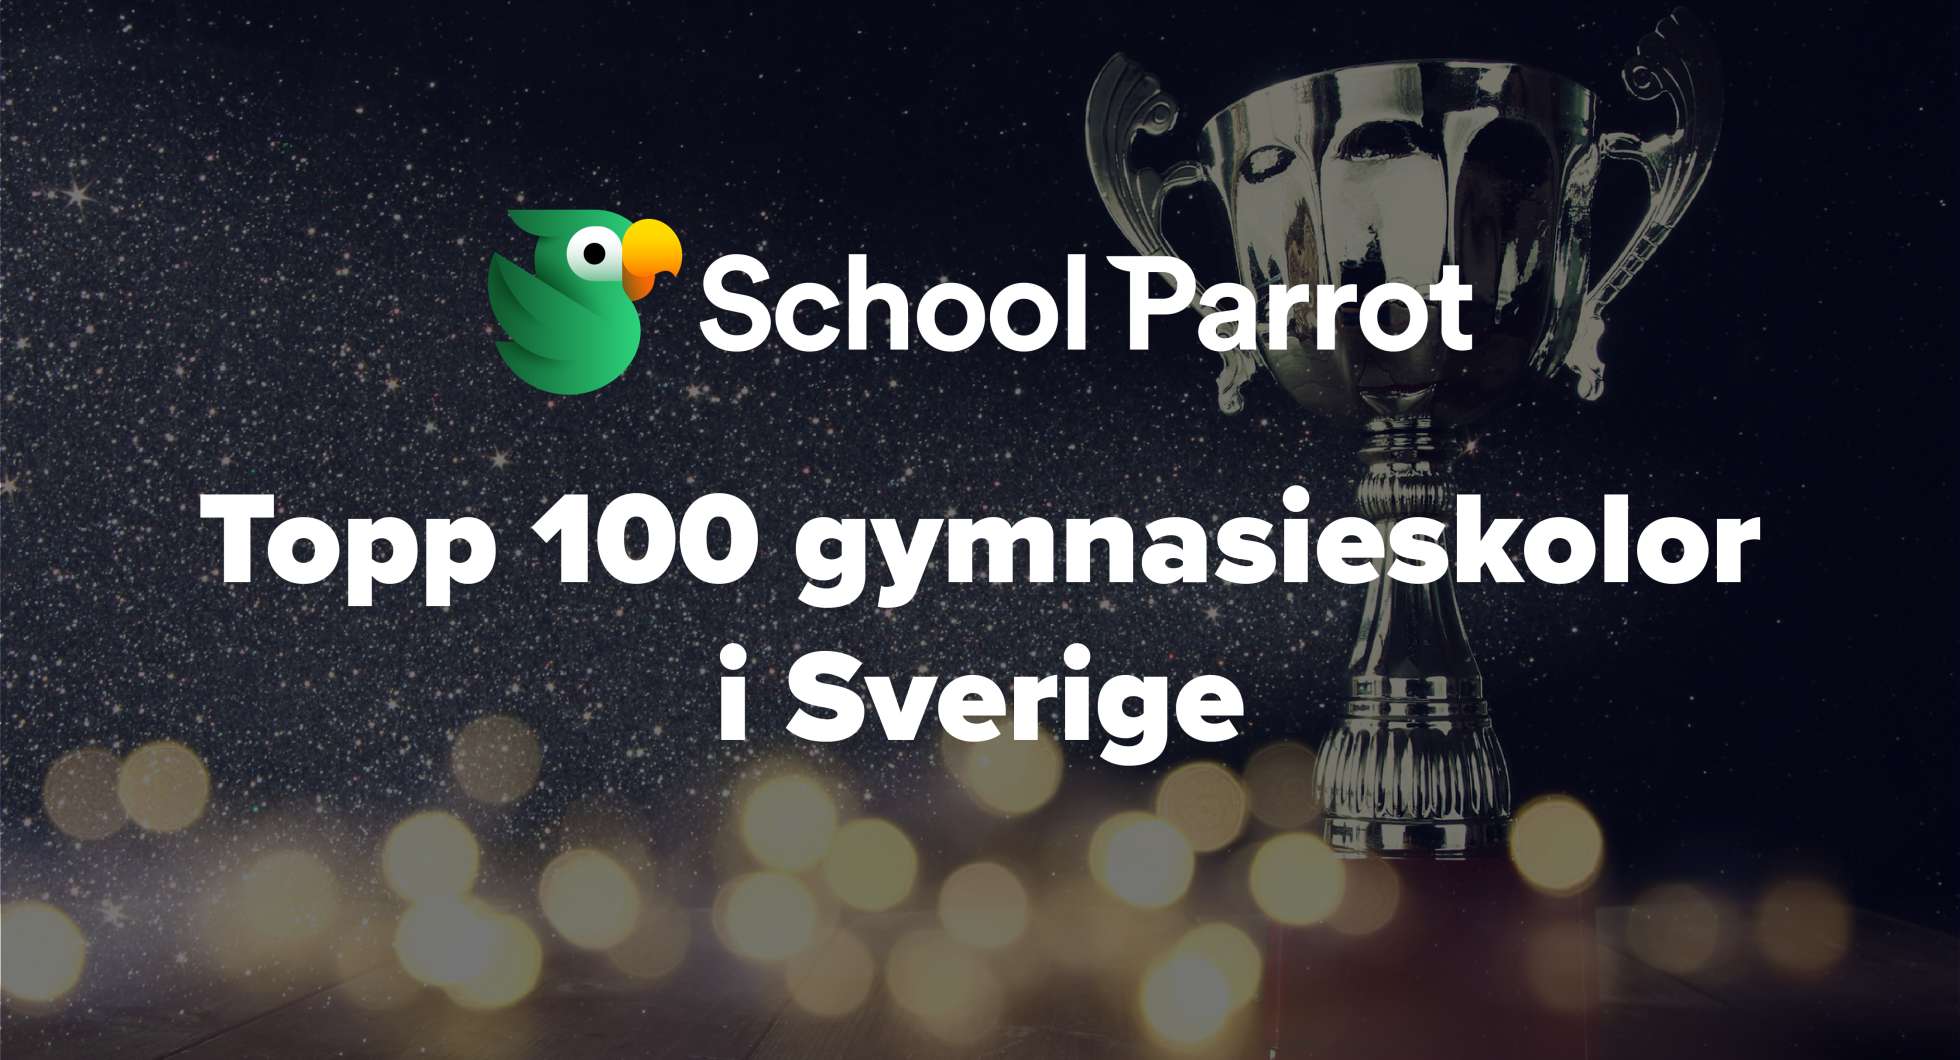 Topp 100 bästa gymnasieskolorna på SchoolParrot enligt eleverna